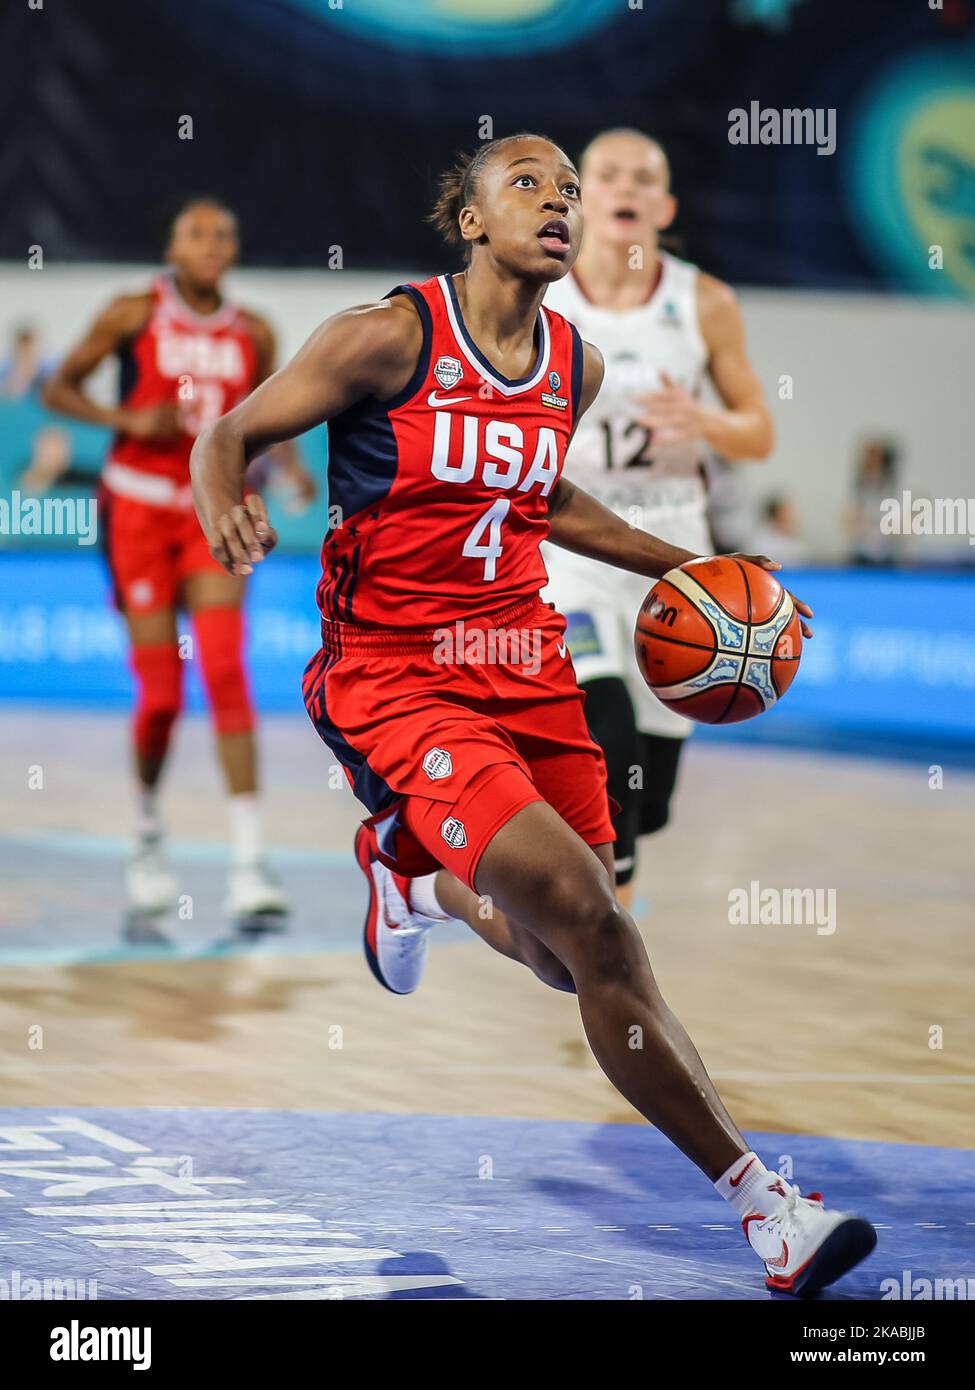 Espagne, Ténérife, 25 septembre 2018: Joueuse de basket-ball pour l'équipe nationale des Etats-Unis, Jewell Loyd, en action Banque D'Images